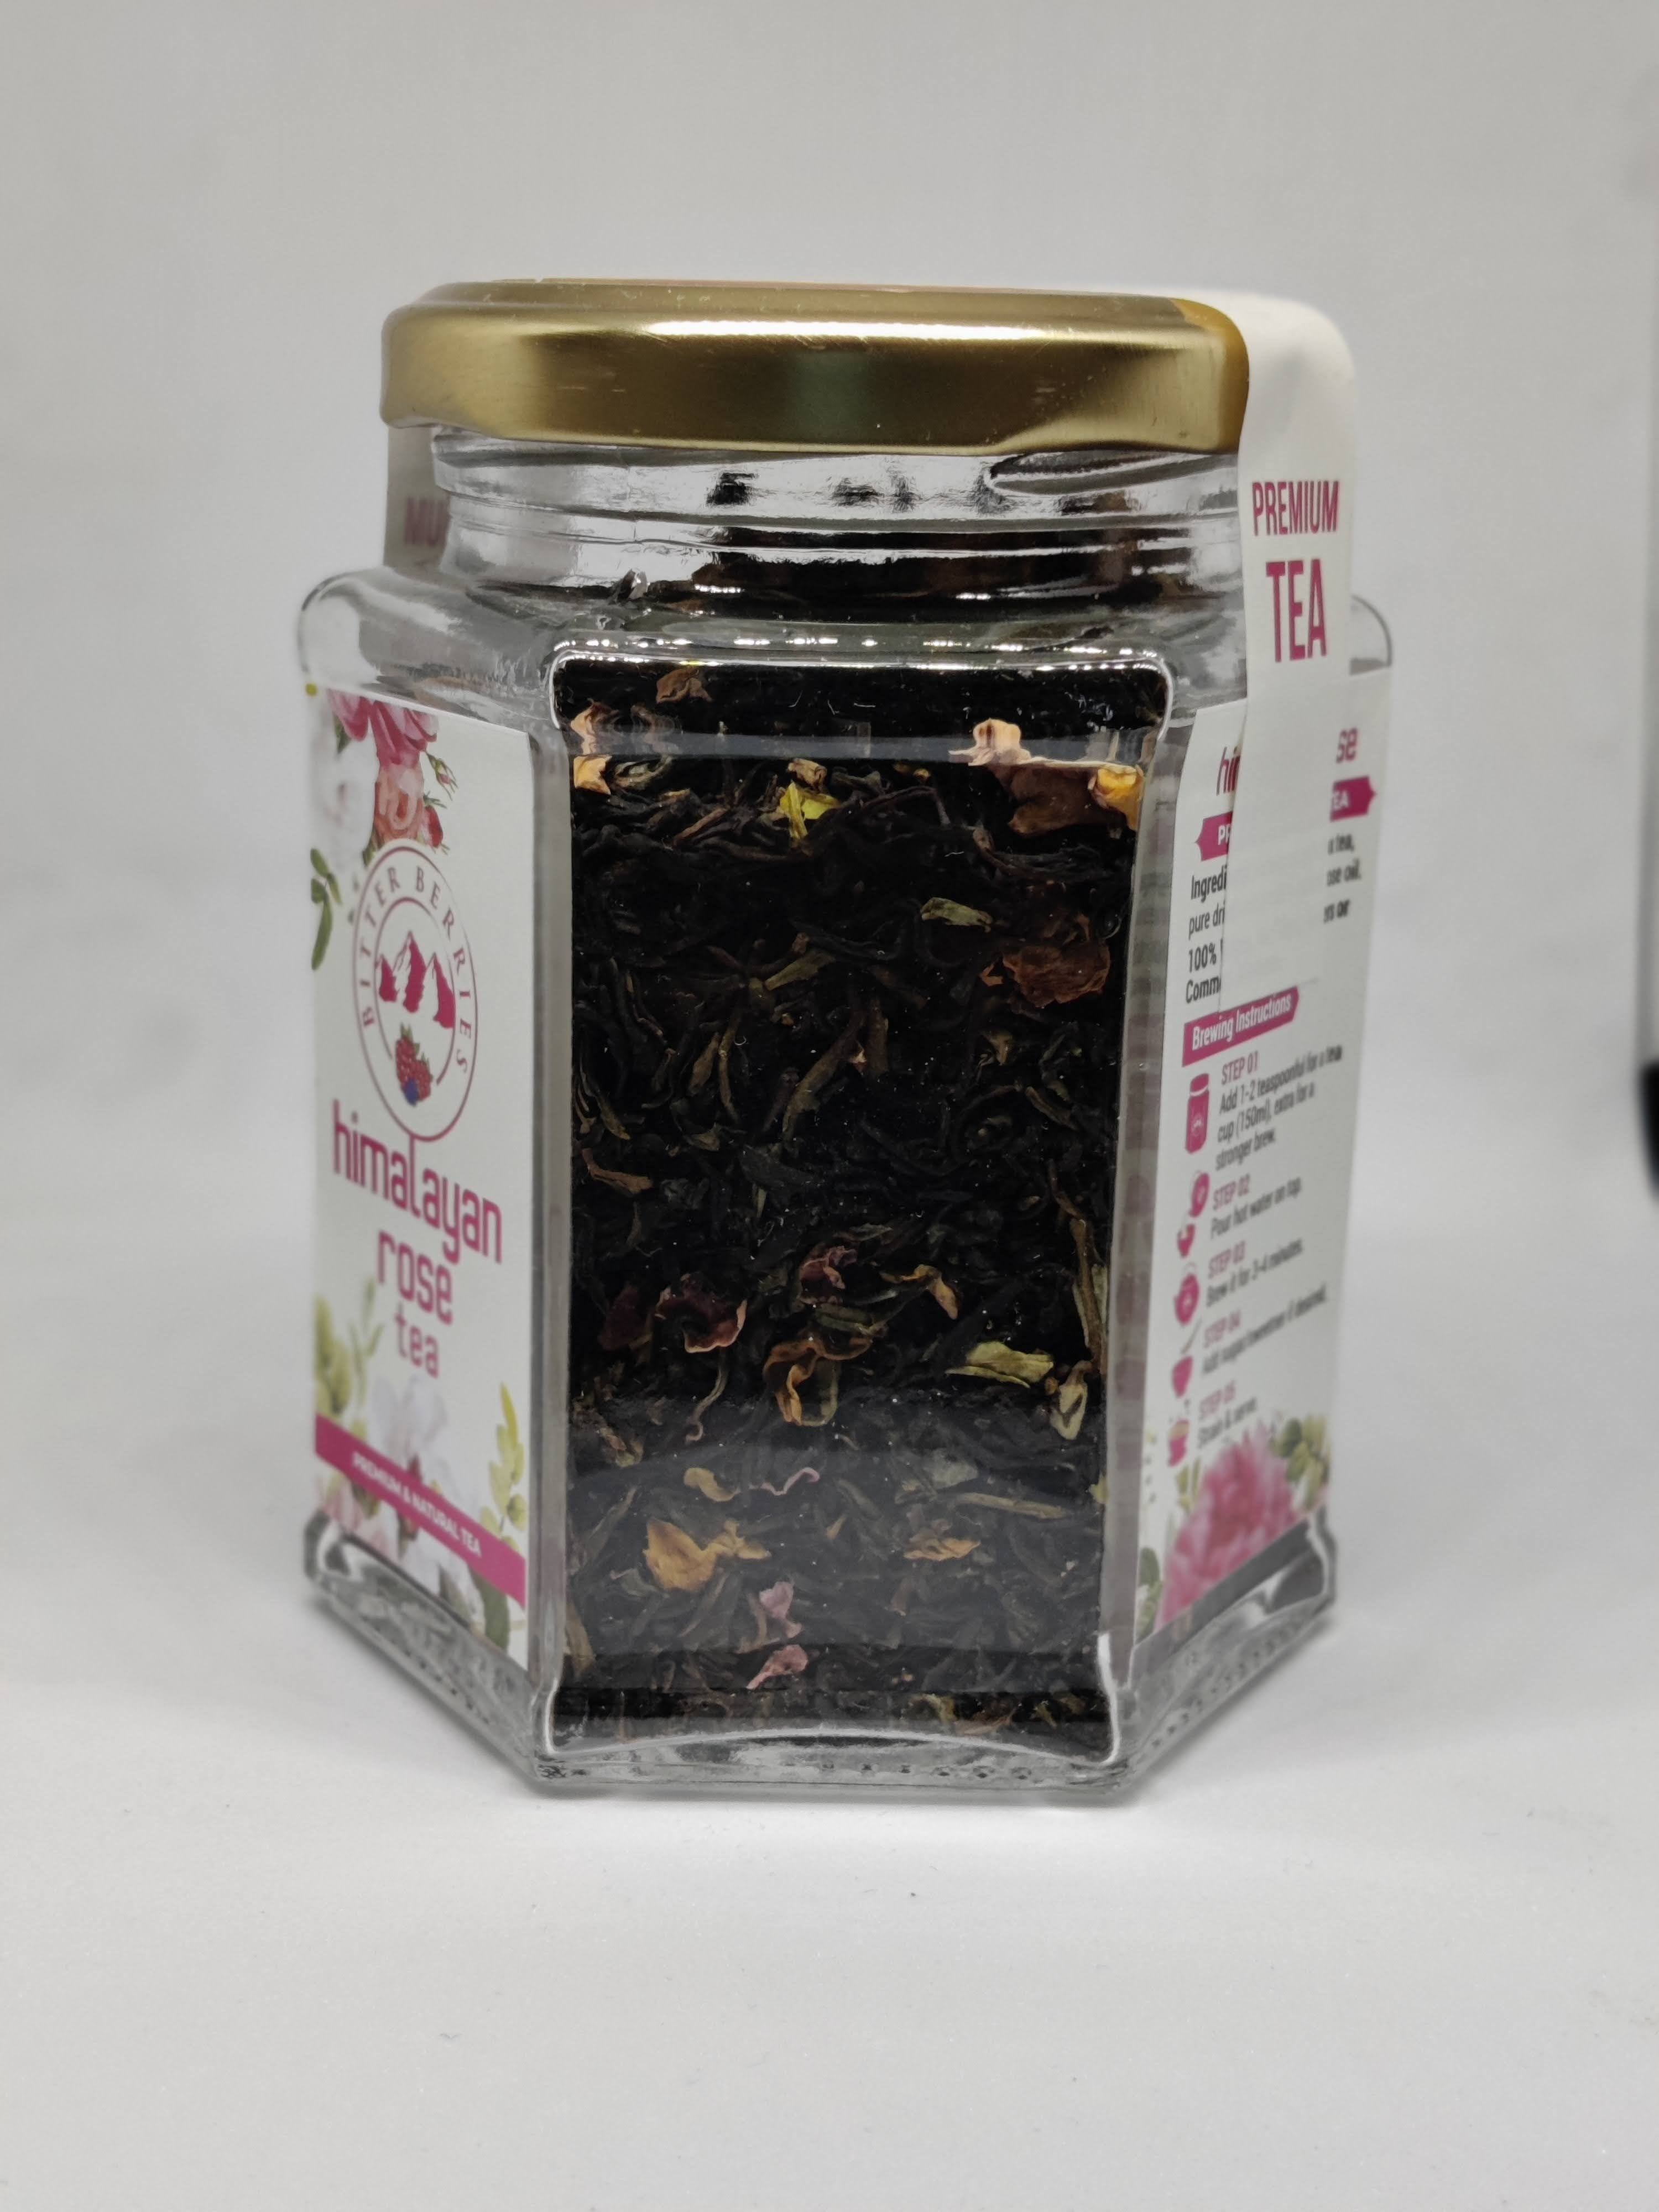 Himalayan rose Tea